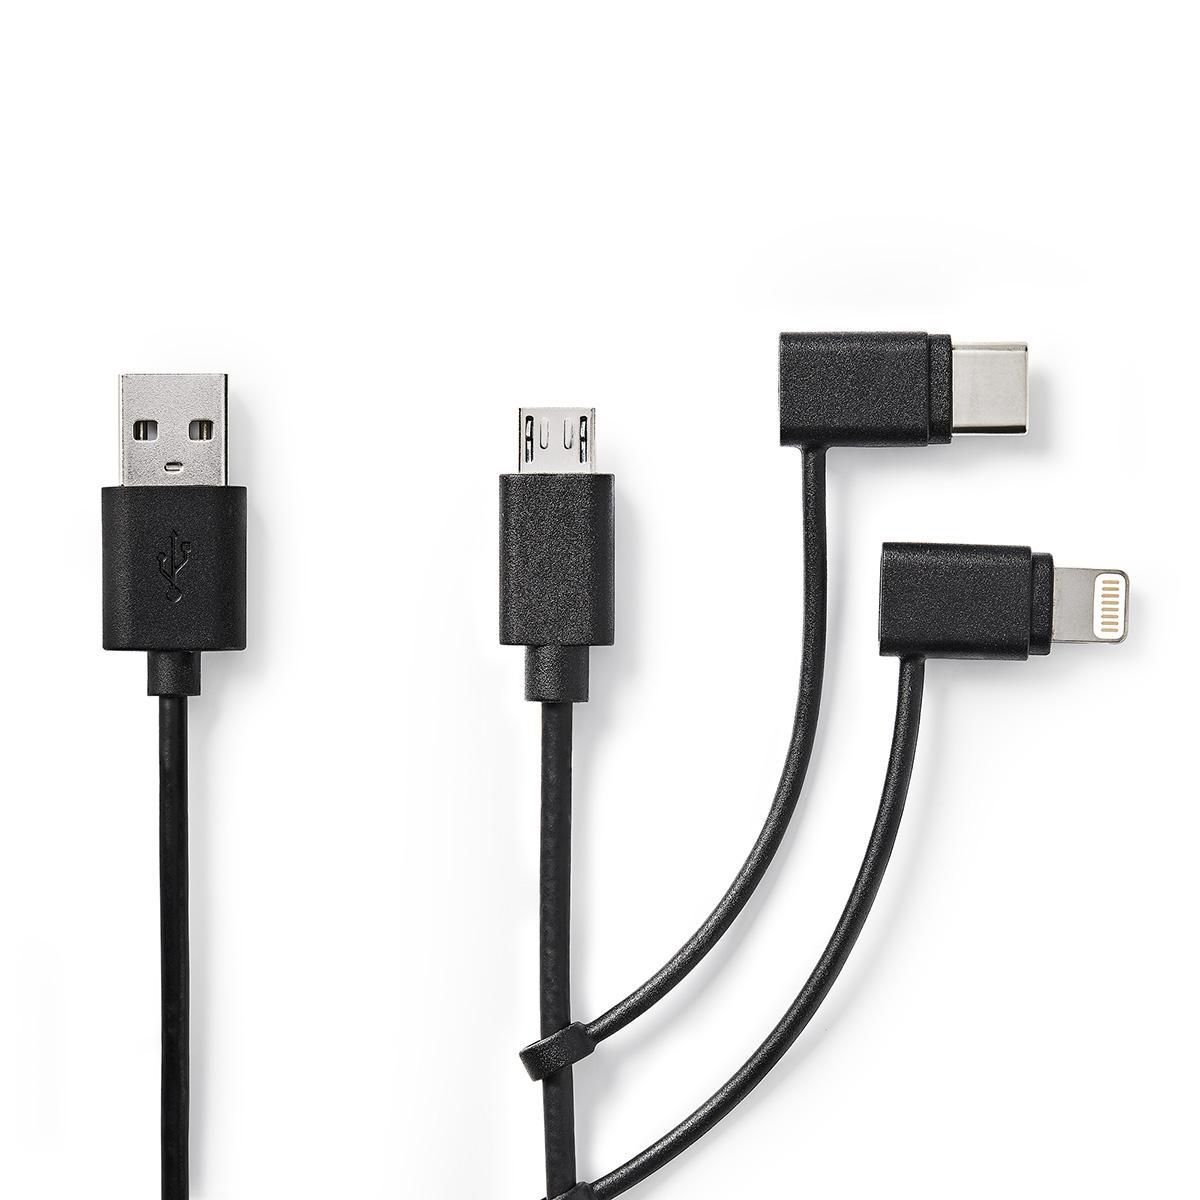 Nedis synchronizační a nabíjecí kabel 3 v 1, zástrčka USB A - zástrčka Micro B + USB-C + zástrčka Apple Lightning 8-pin, 1 m, černá (CCGP60620BK10)